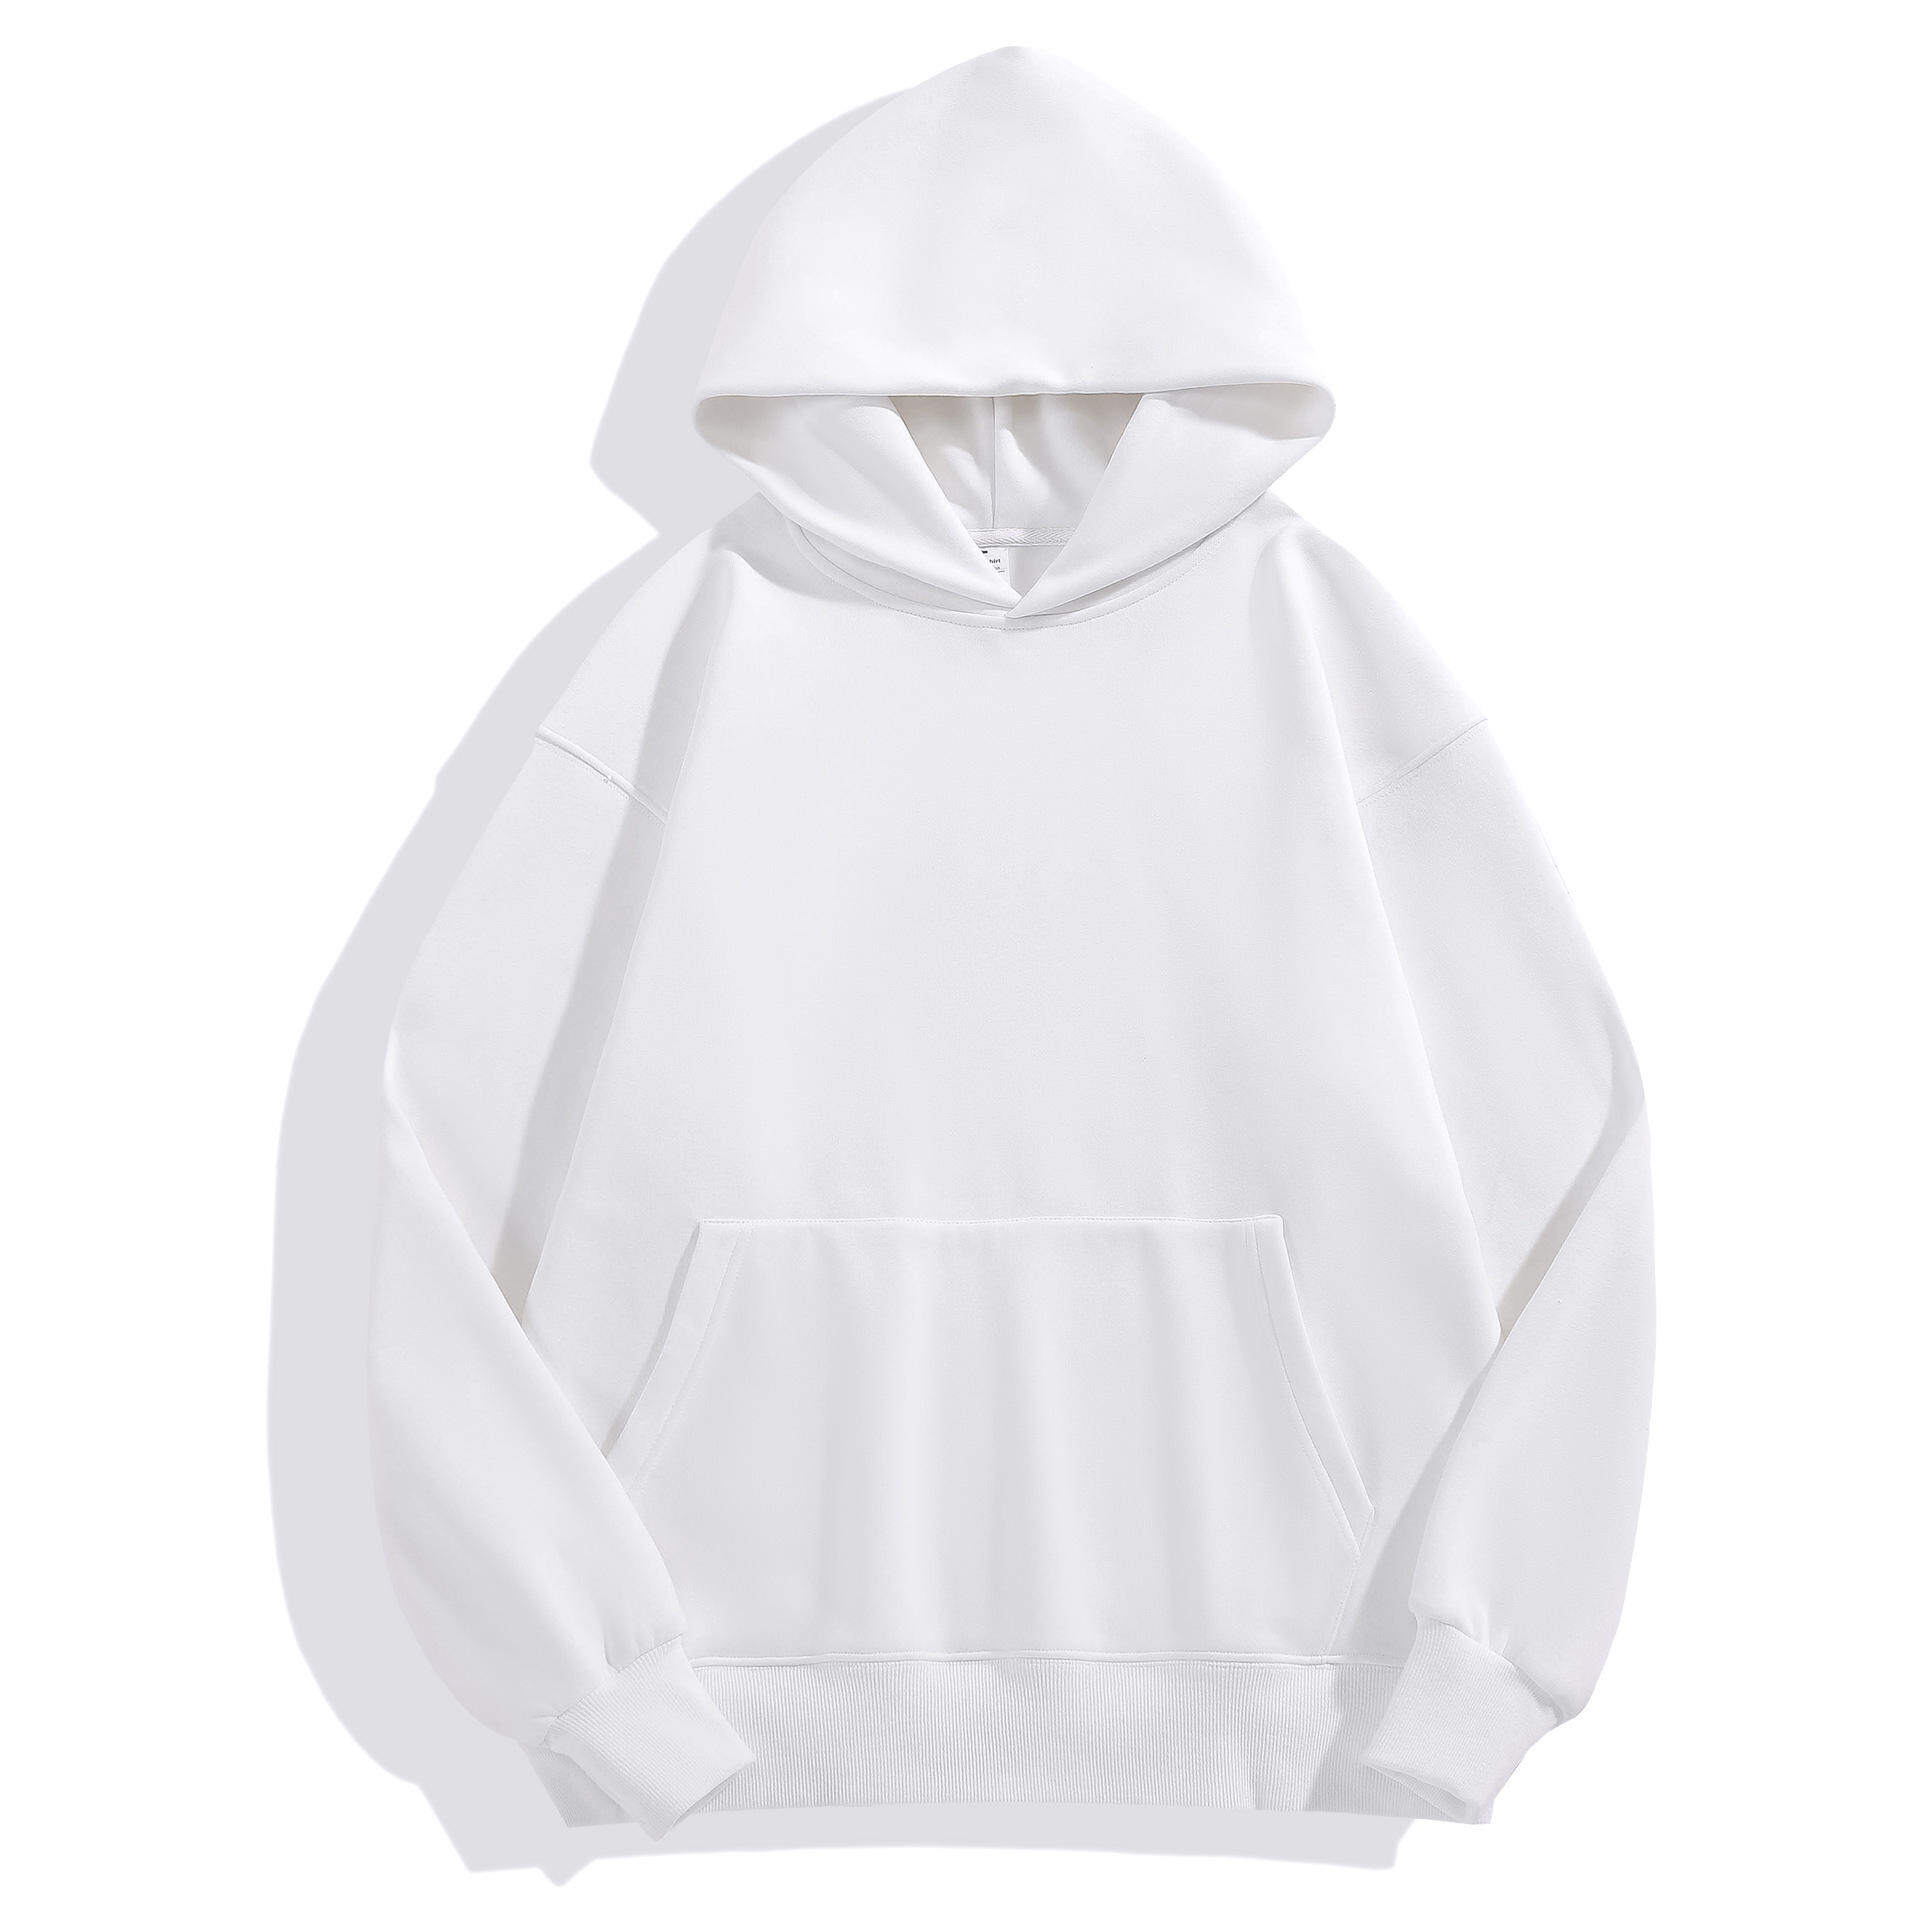 wholesale blank zip up hoodies, blank crop top hoodie wholesale, blank hoodies manufacturer, blank hoodie manufacturers, buy blank hoodies in bulk